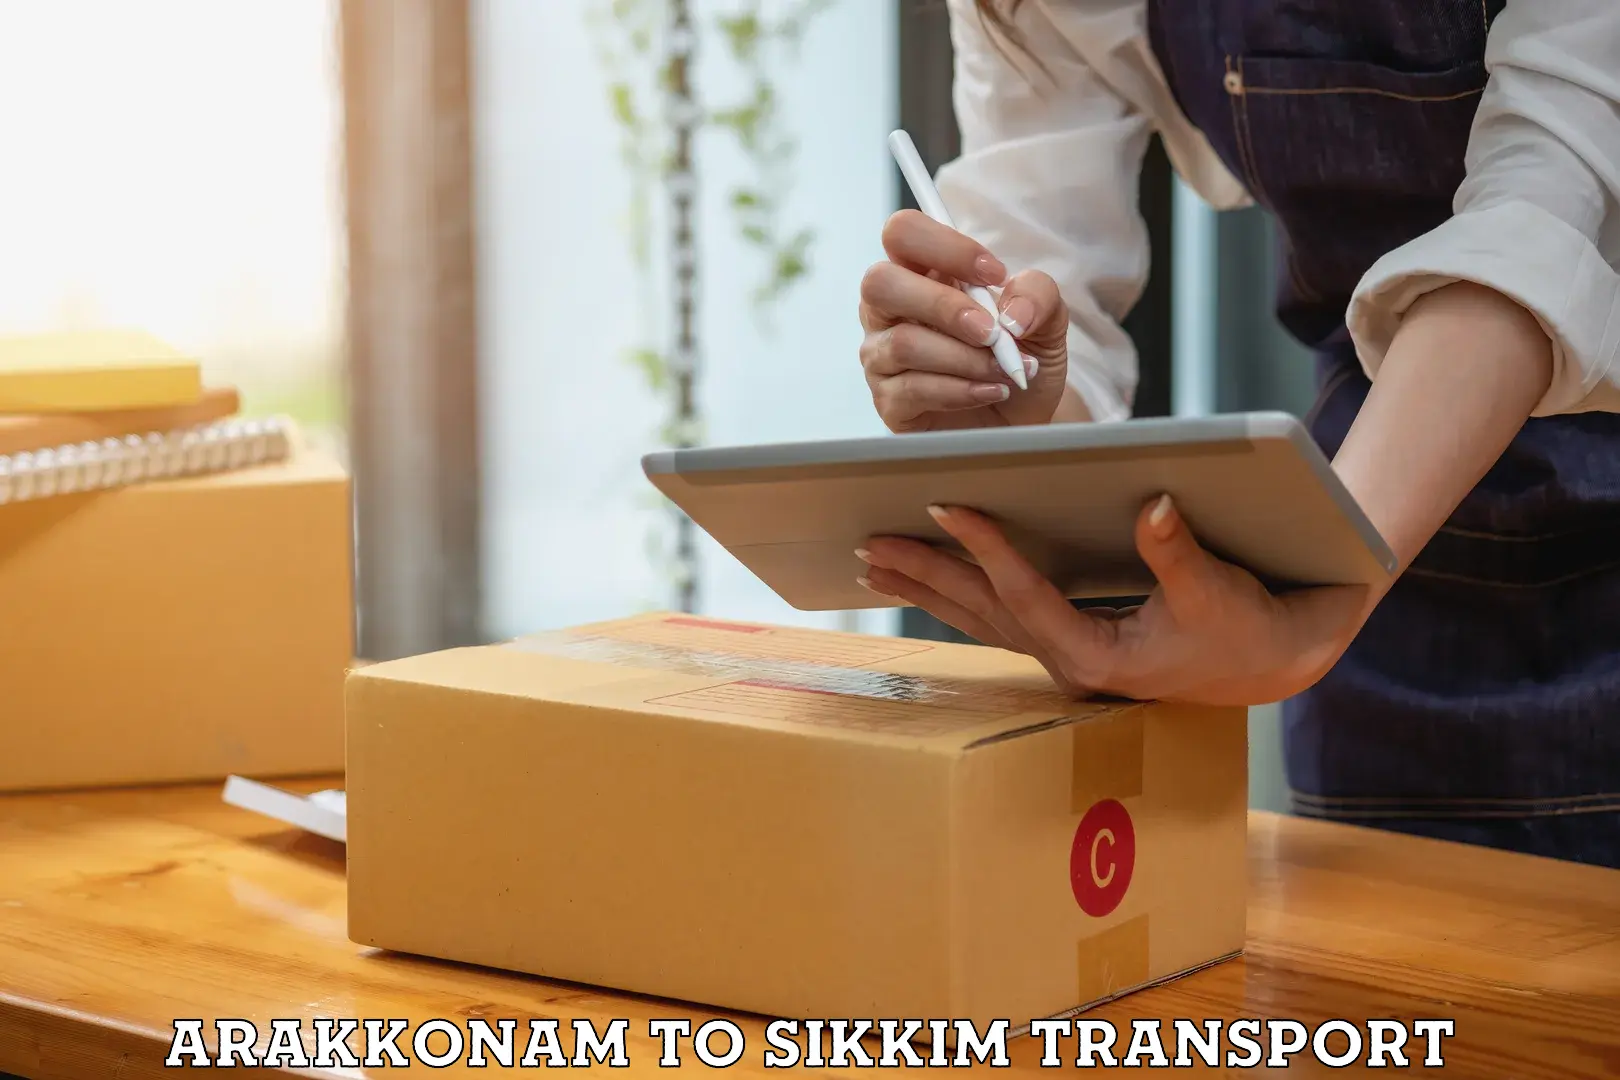 International cargo transportation services Arakkonam to Namchi